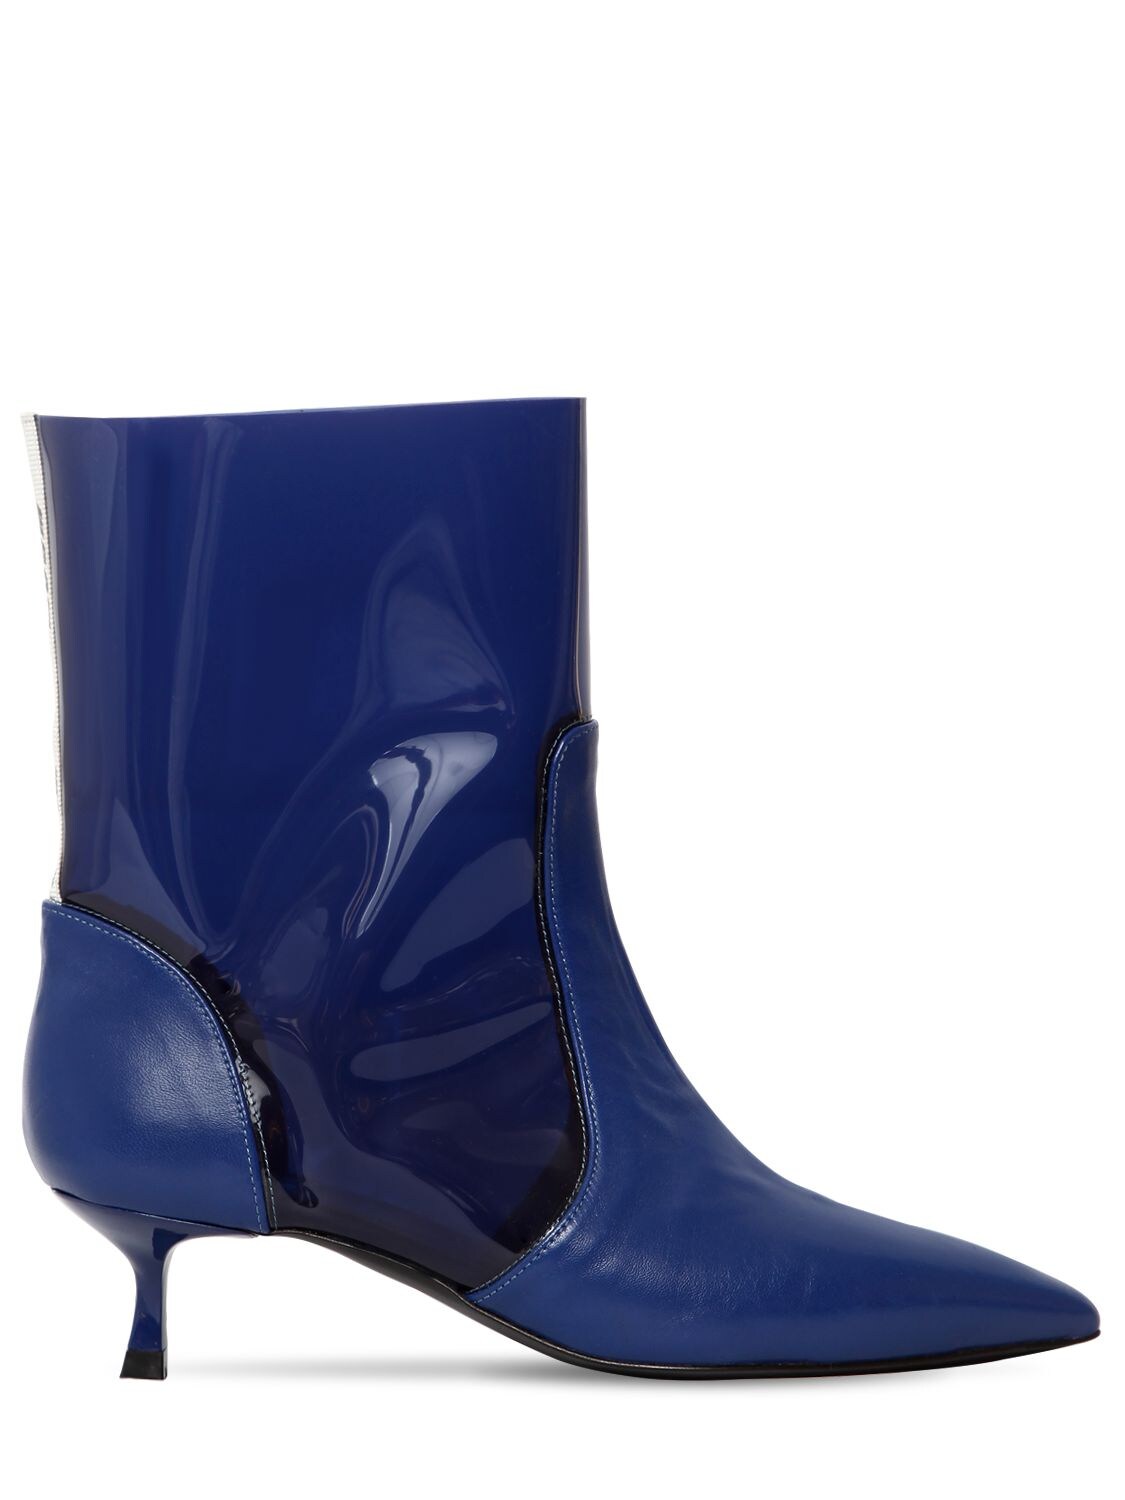 blue pvc boots